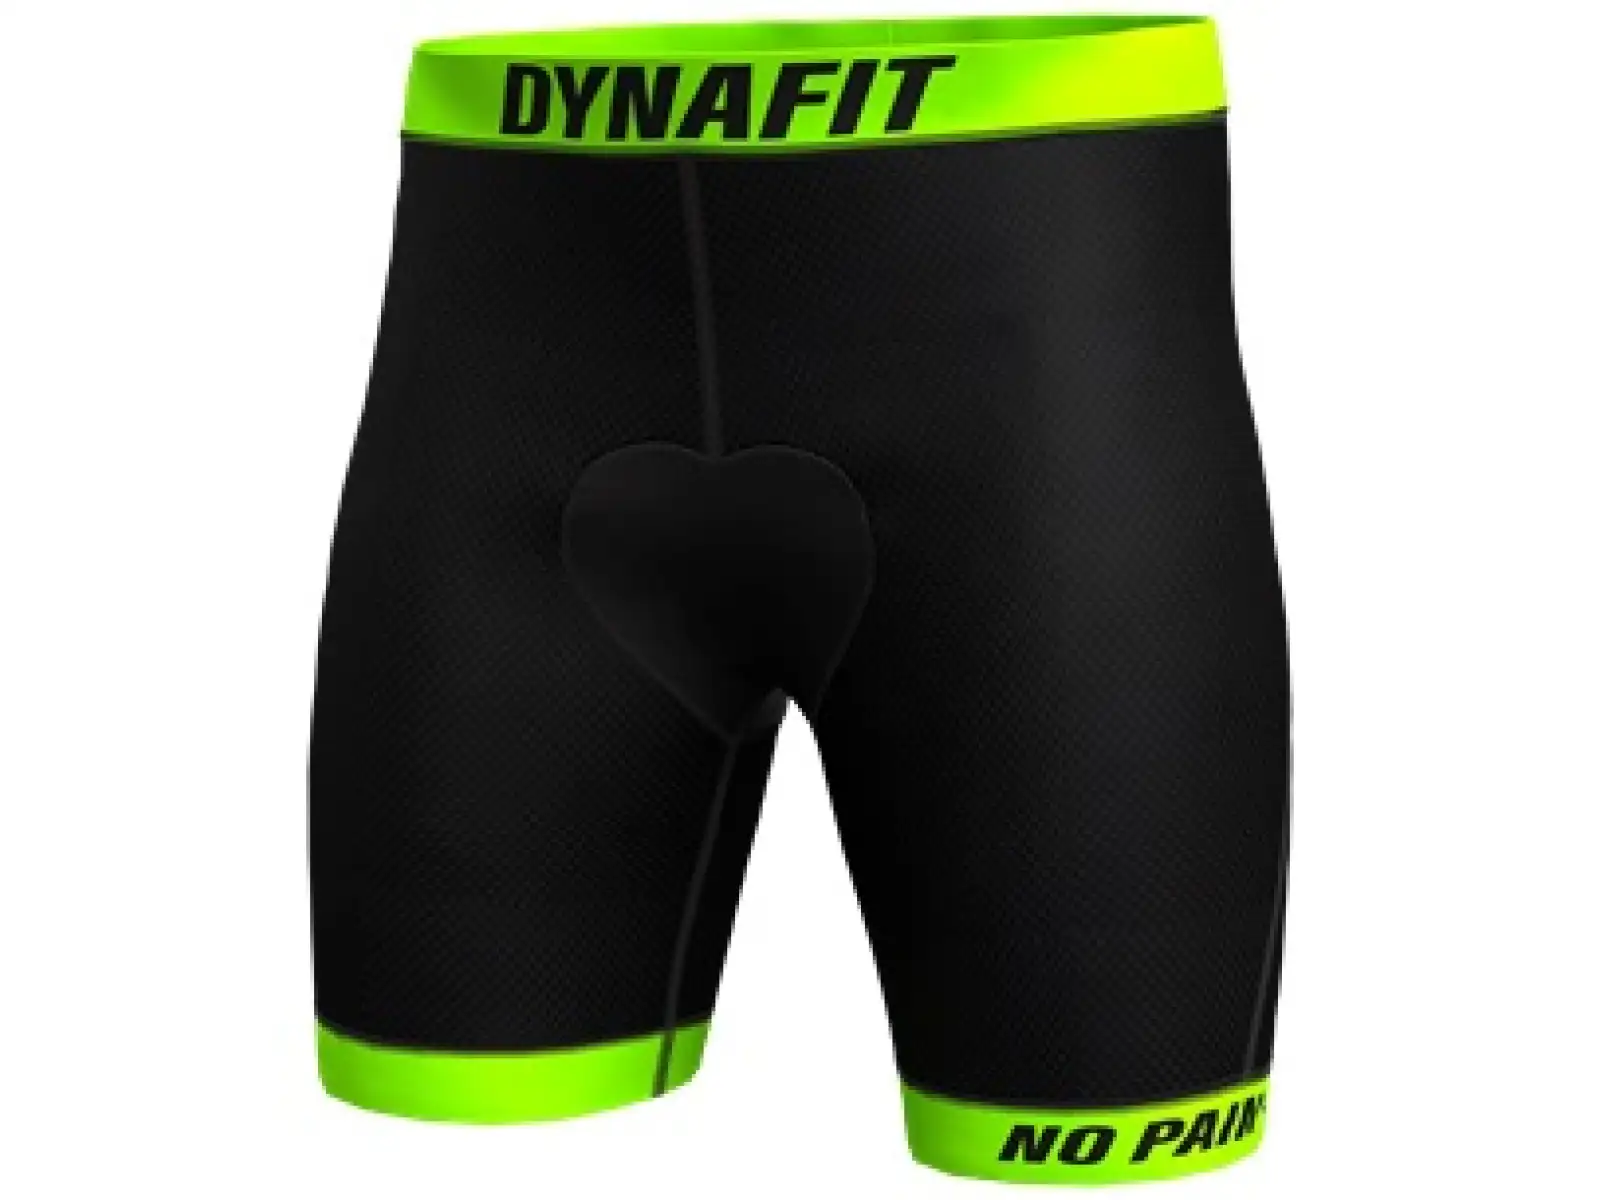 Dynafit Ride Padded M Under Short pánske vnútorné šortky black out